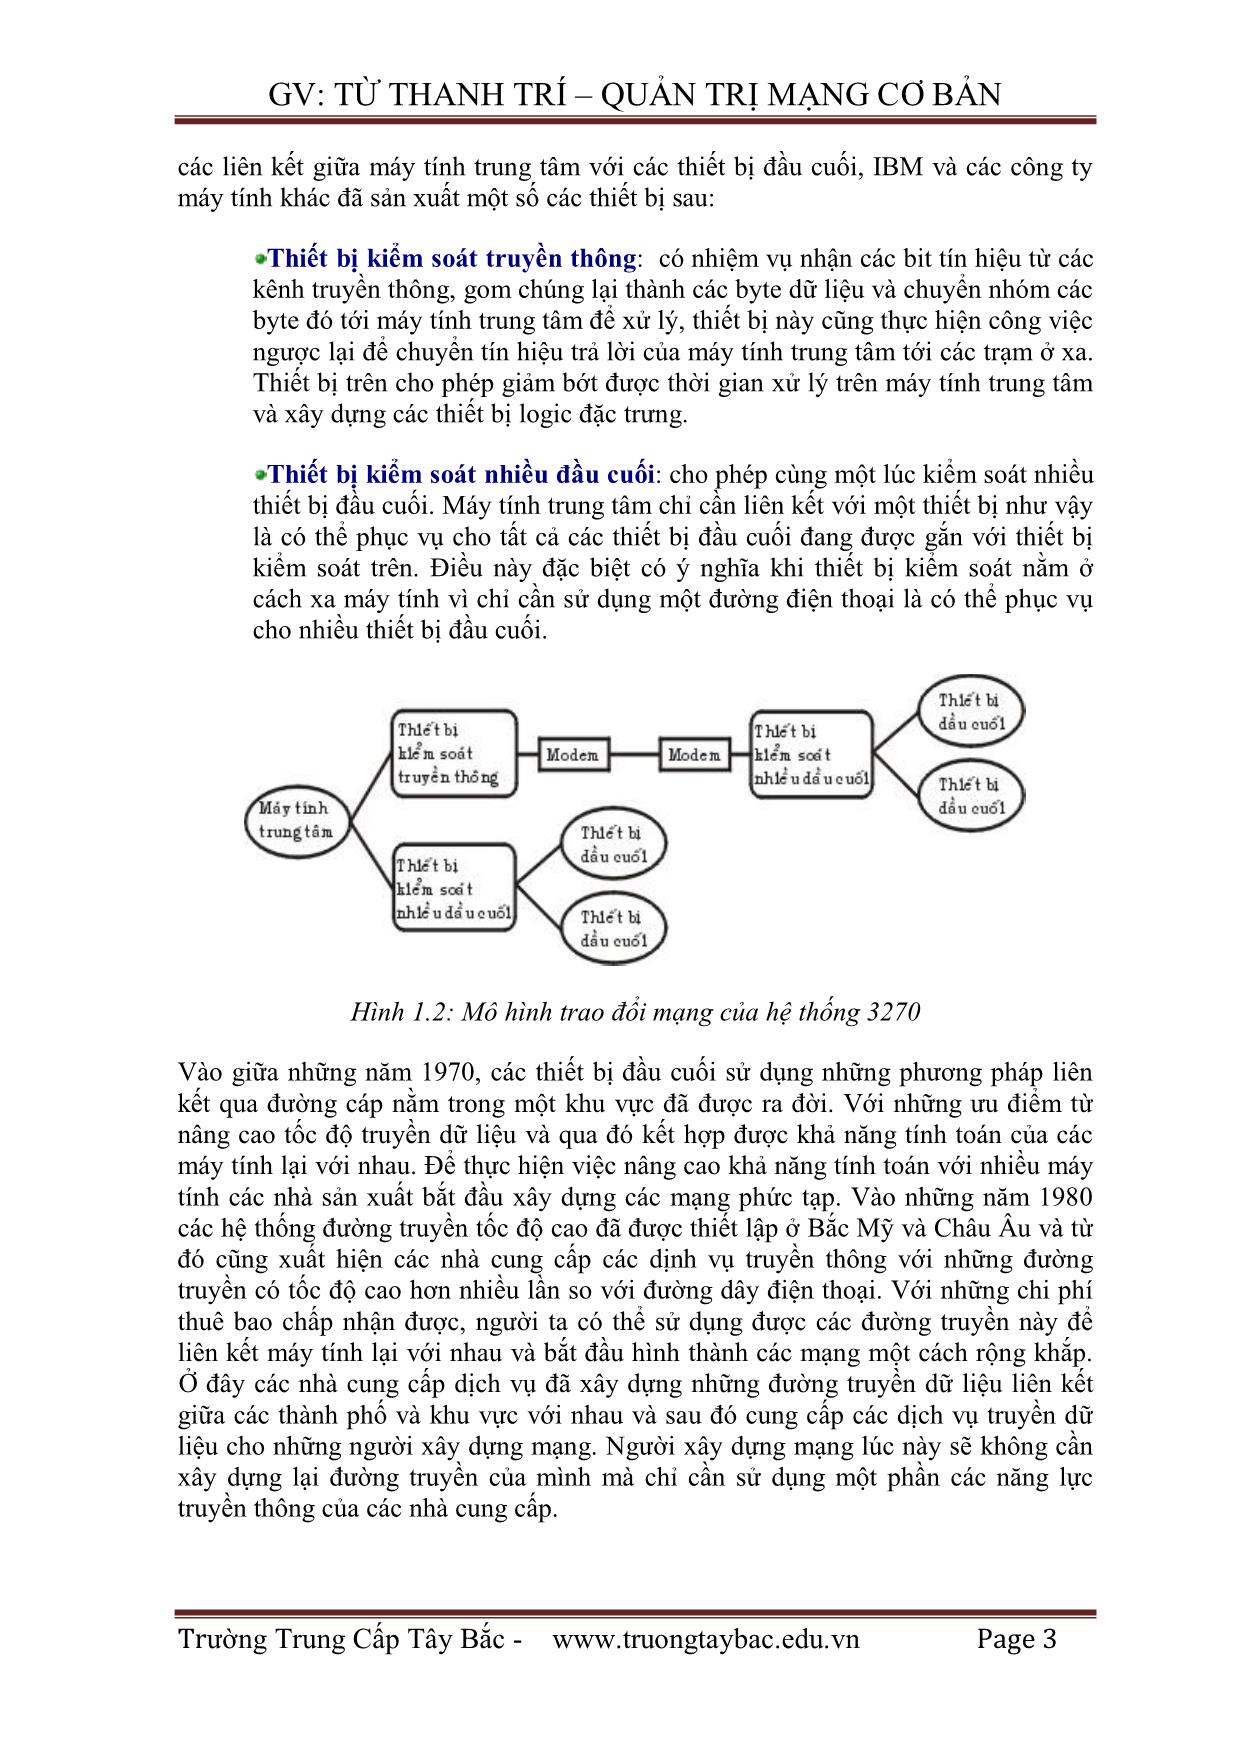 Giáo trình Quản trị mạng - Từ Thanh Trí trang 4